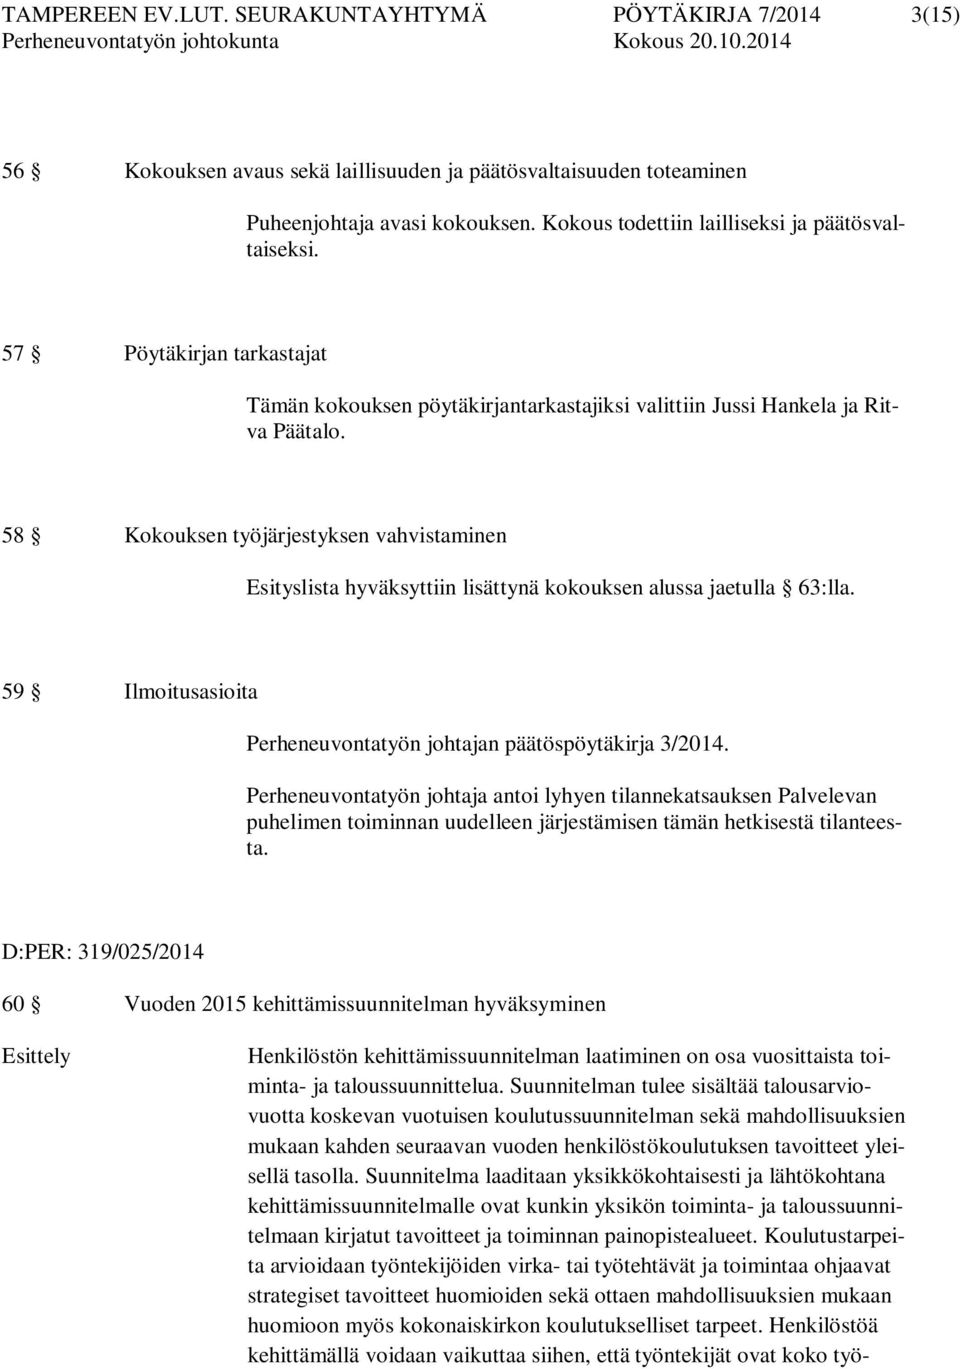 58 Kkuksen työjärjestyksen vahvistaminen Esityslista hyväksyttiin lisättynä kkuksen alussa jaetulla 63:lla. 59 Ilmitusasiita Perheneuvntatyön jhtajan päätöspöytäkirja 3/2014.